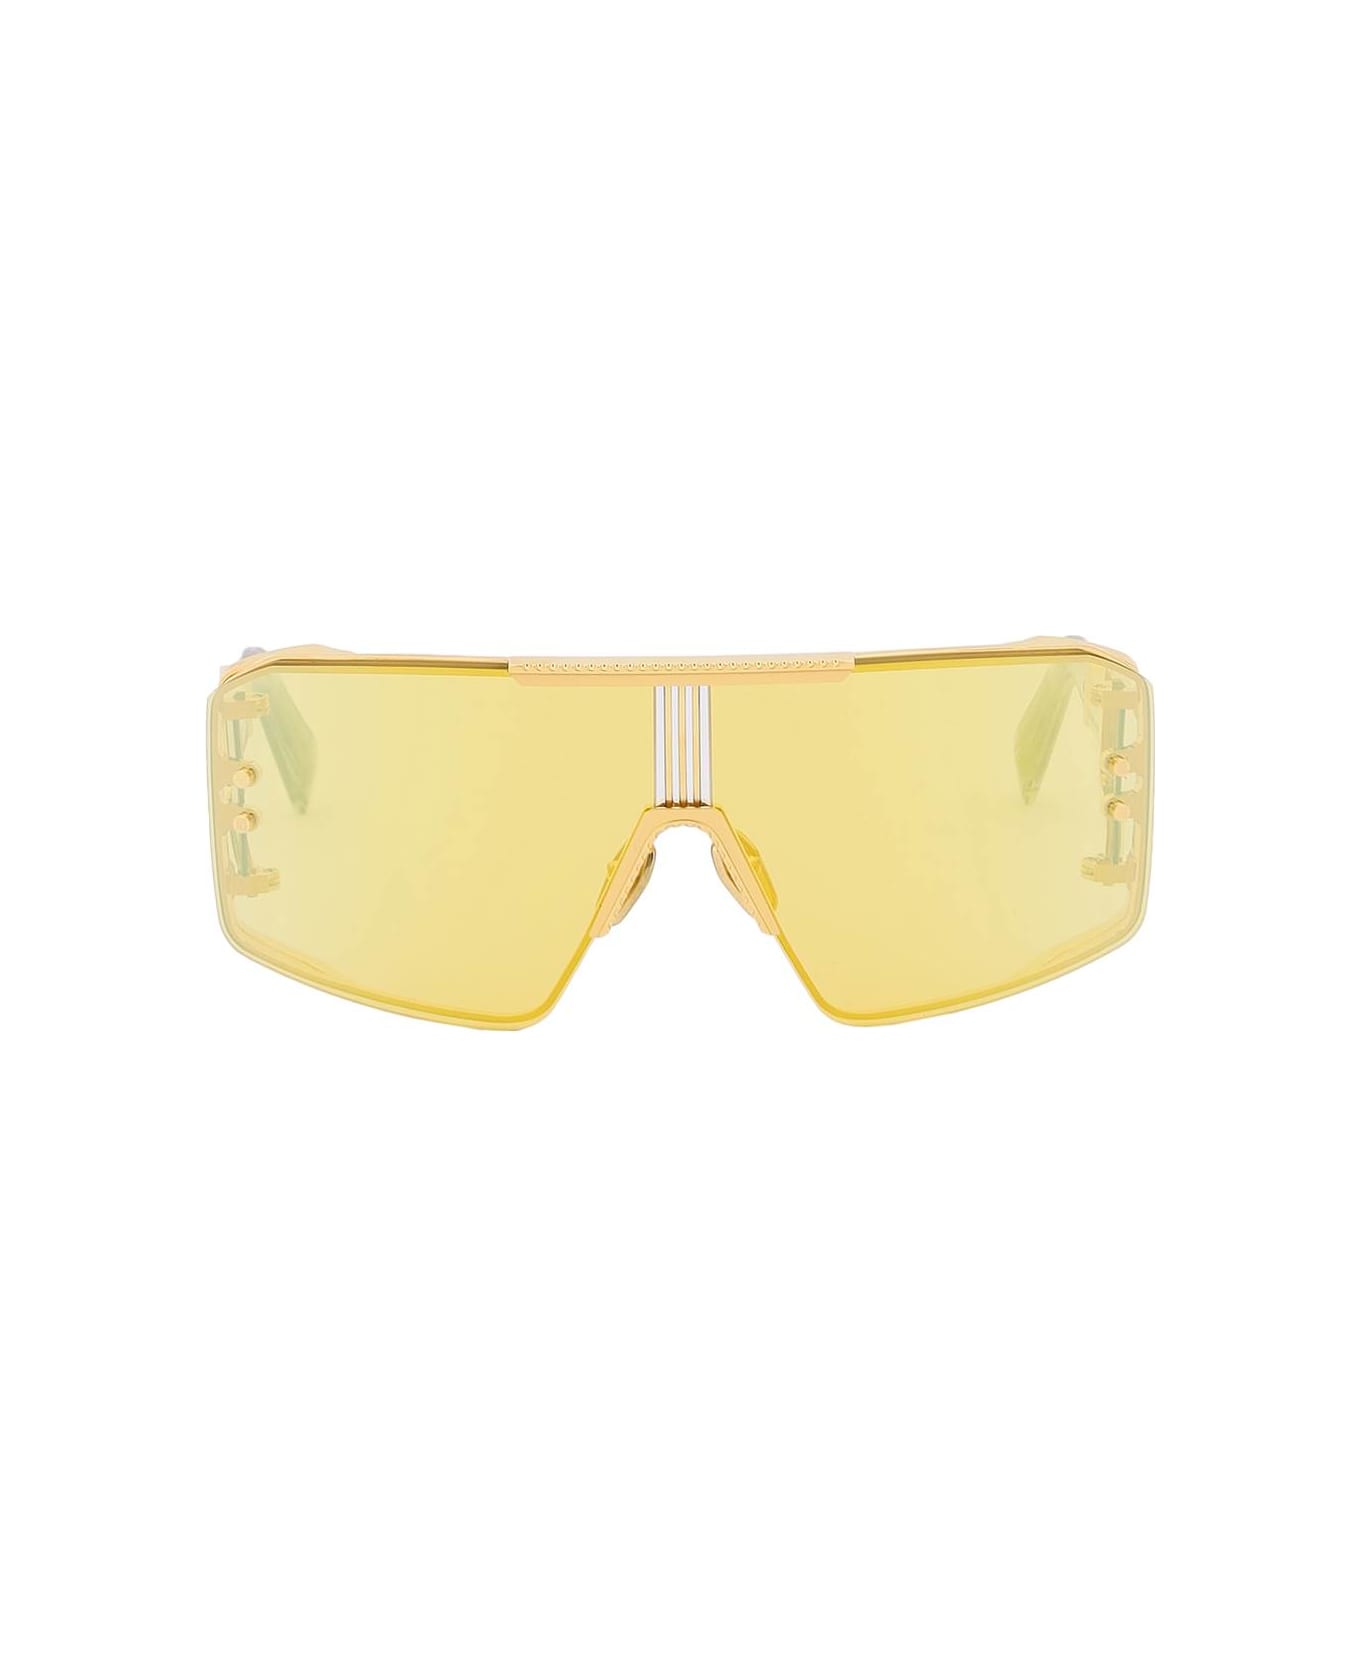 Balmain Le Masque Sunglasses - GOLD GREY (Yellow)